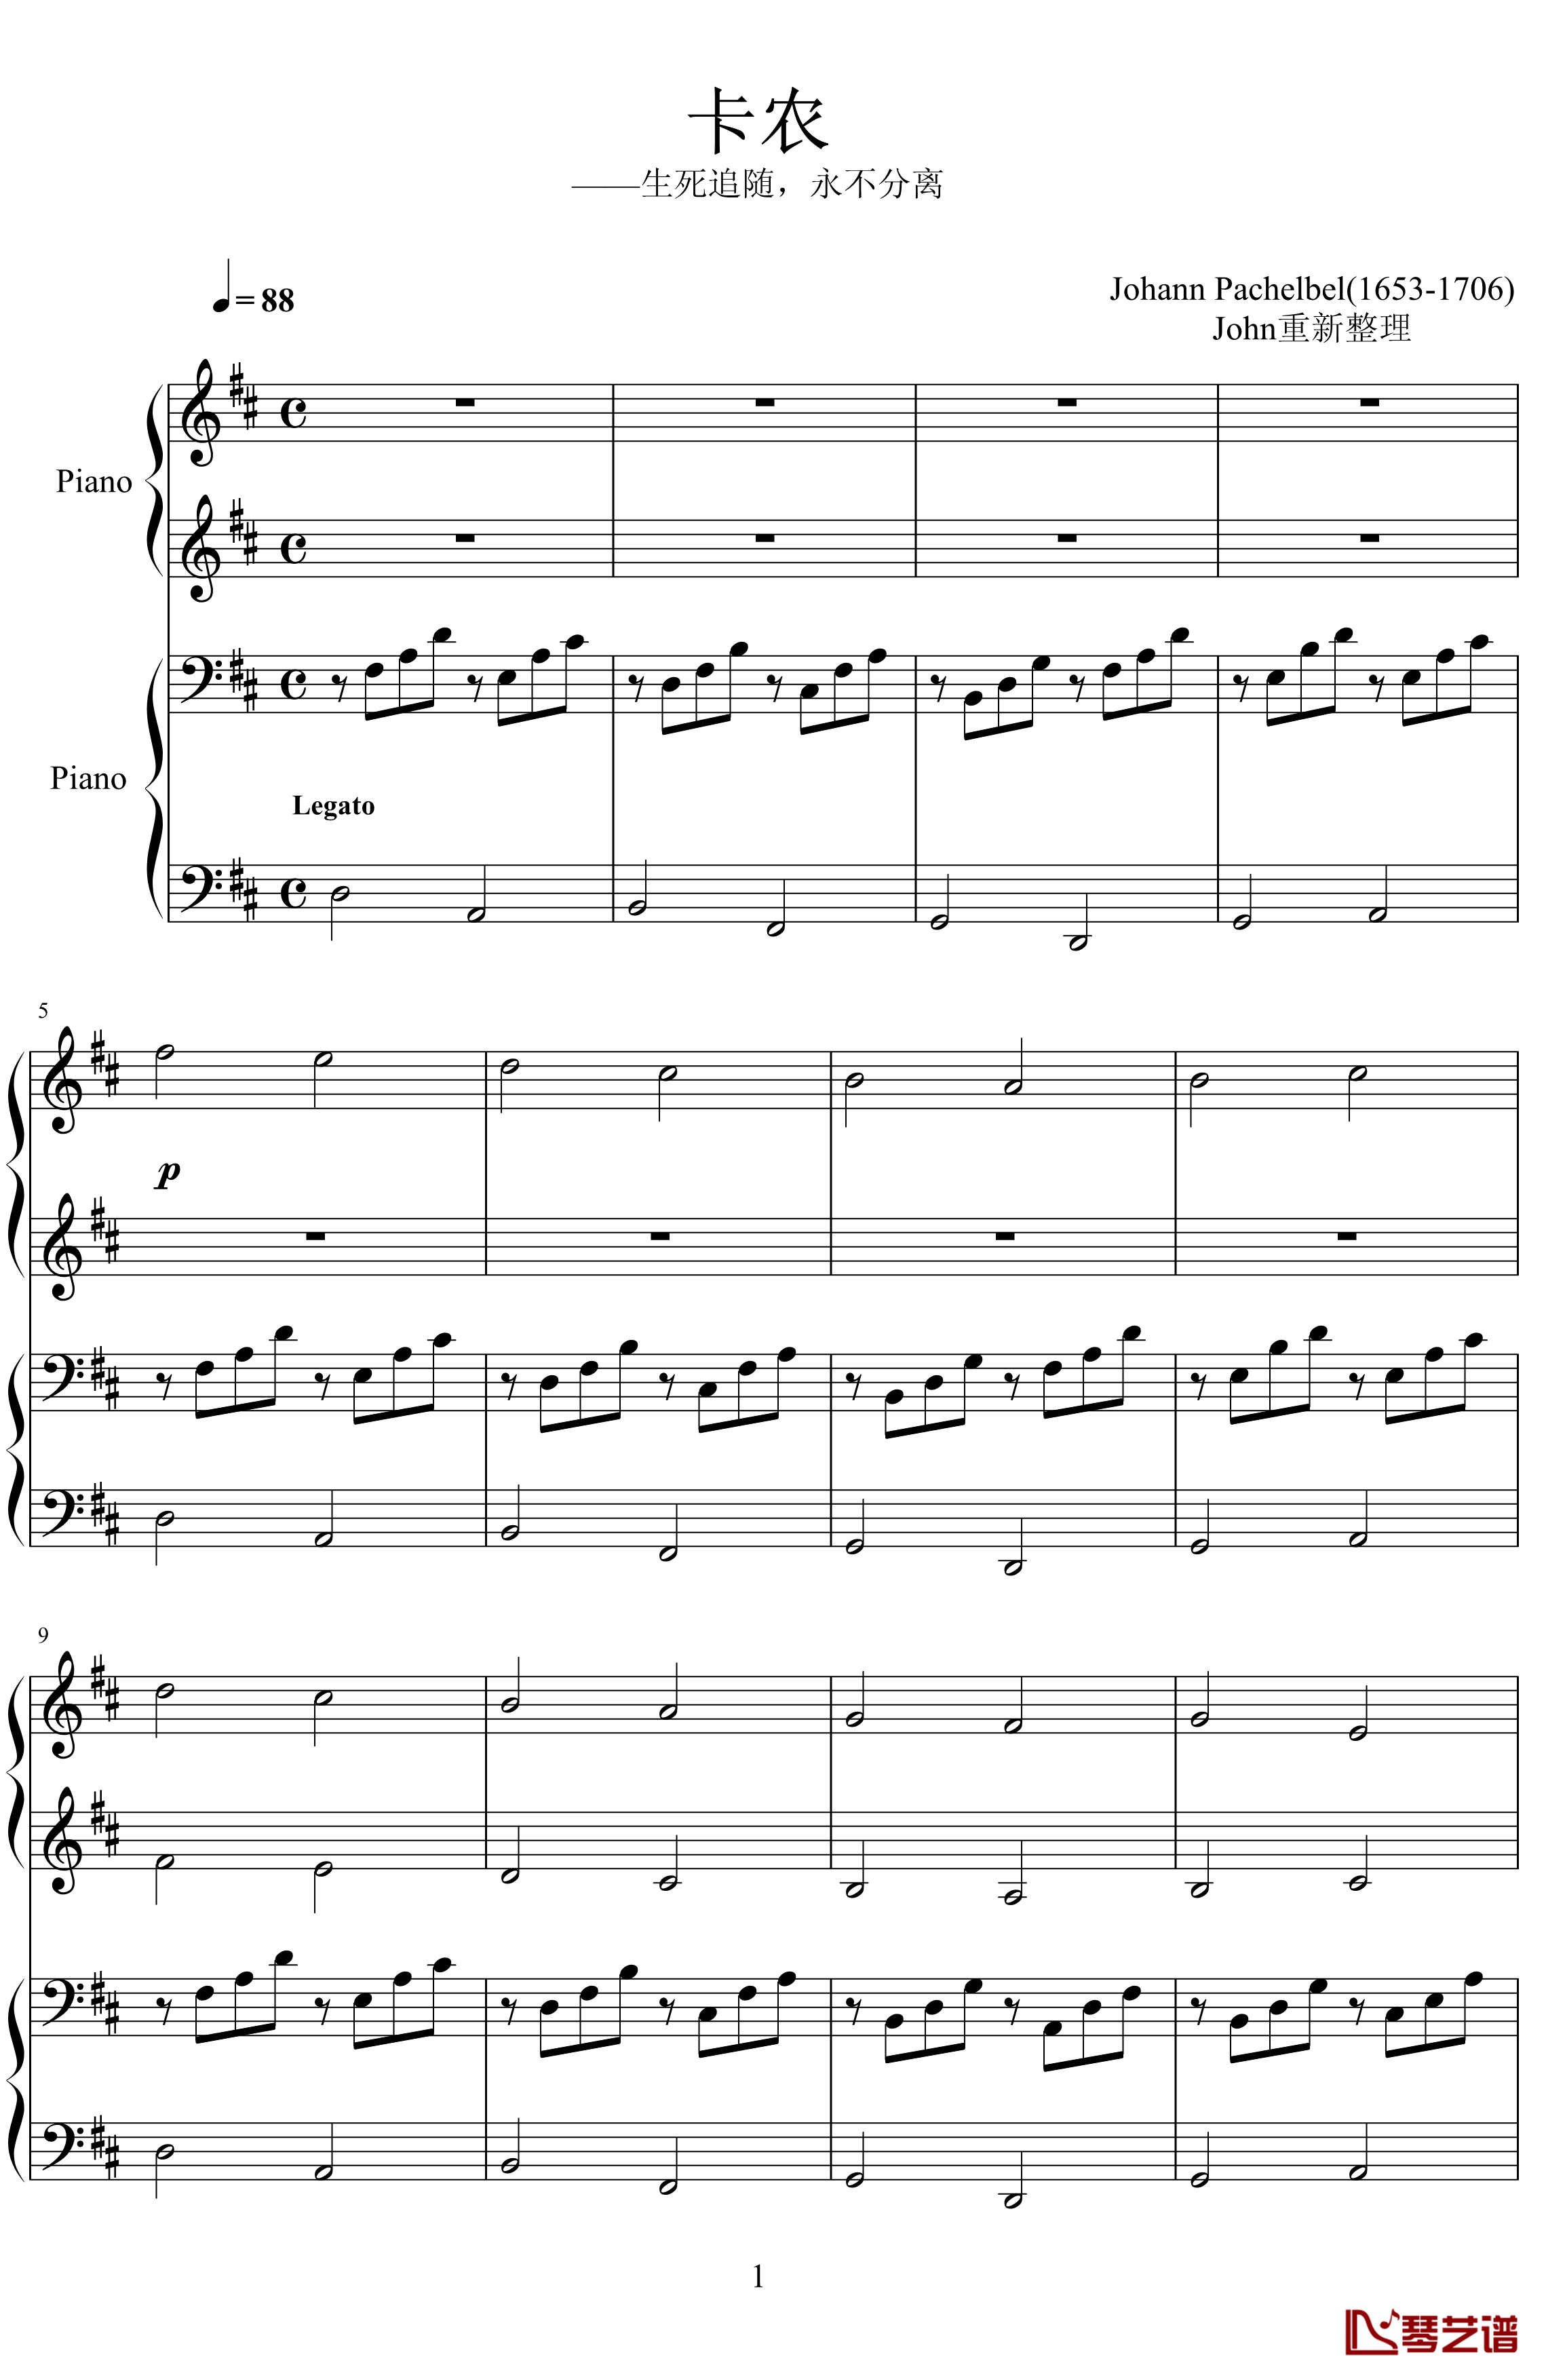 卡农钢琴谱-帕赫贝尔-Pachelbel1